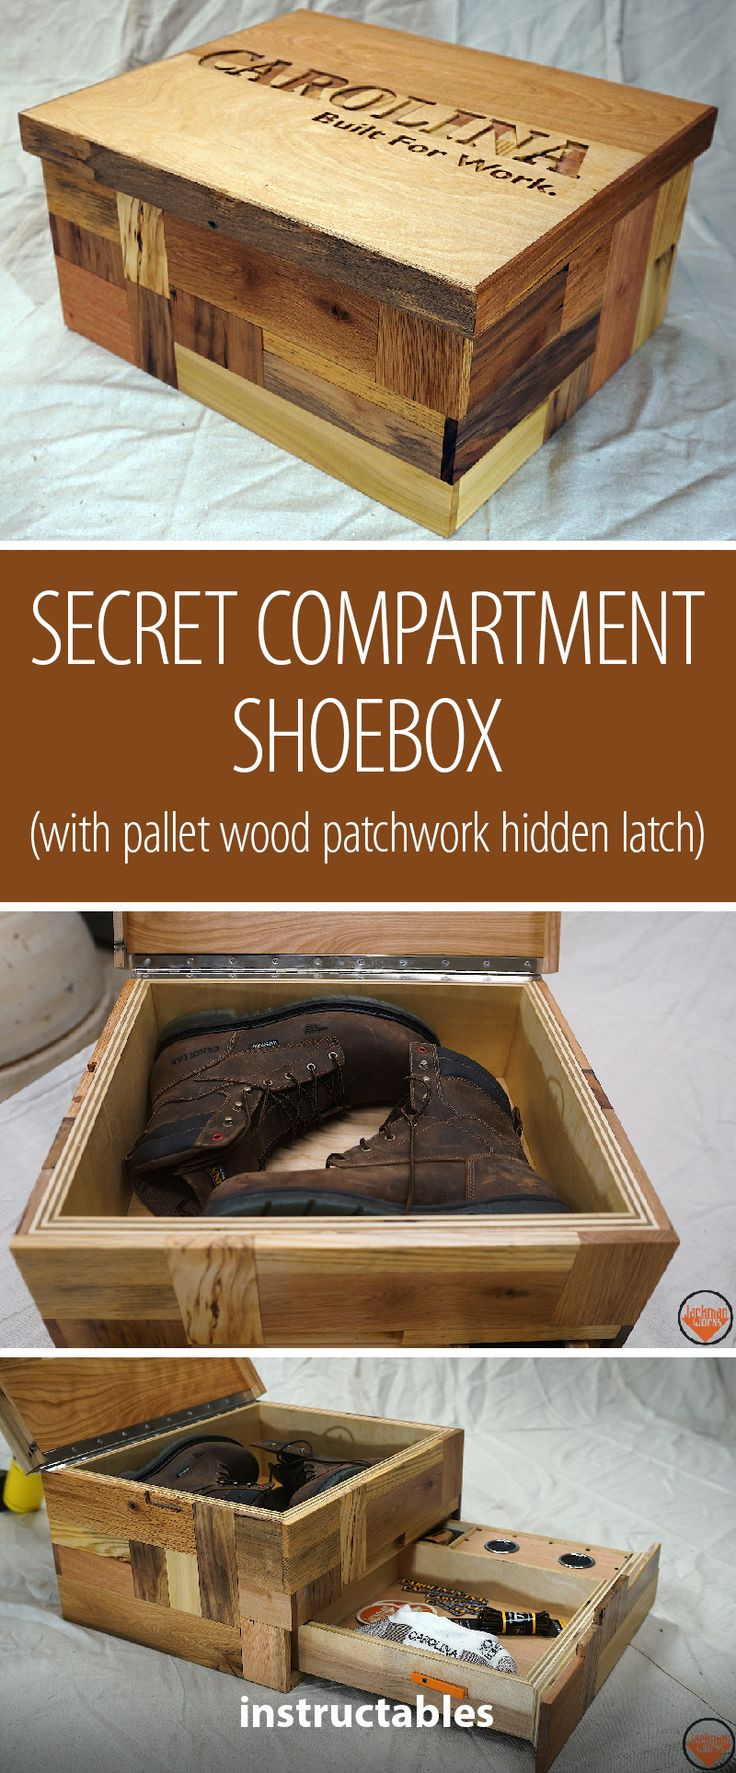 DIY Secret Compartment Box
 Secret partment Shoebox with Pallet Wood Patchwork